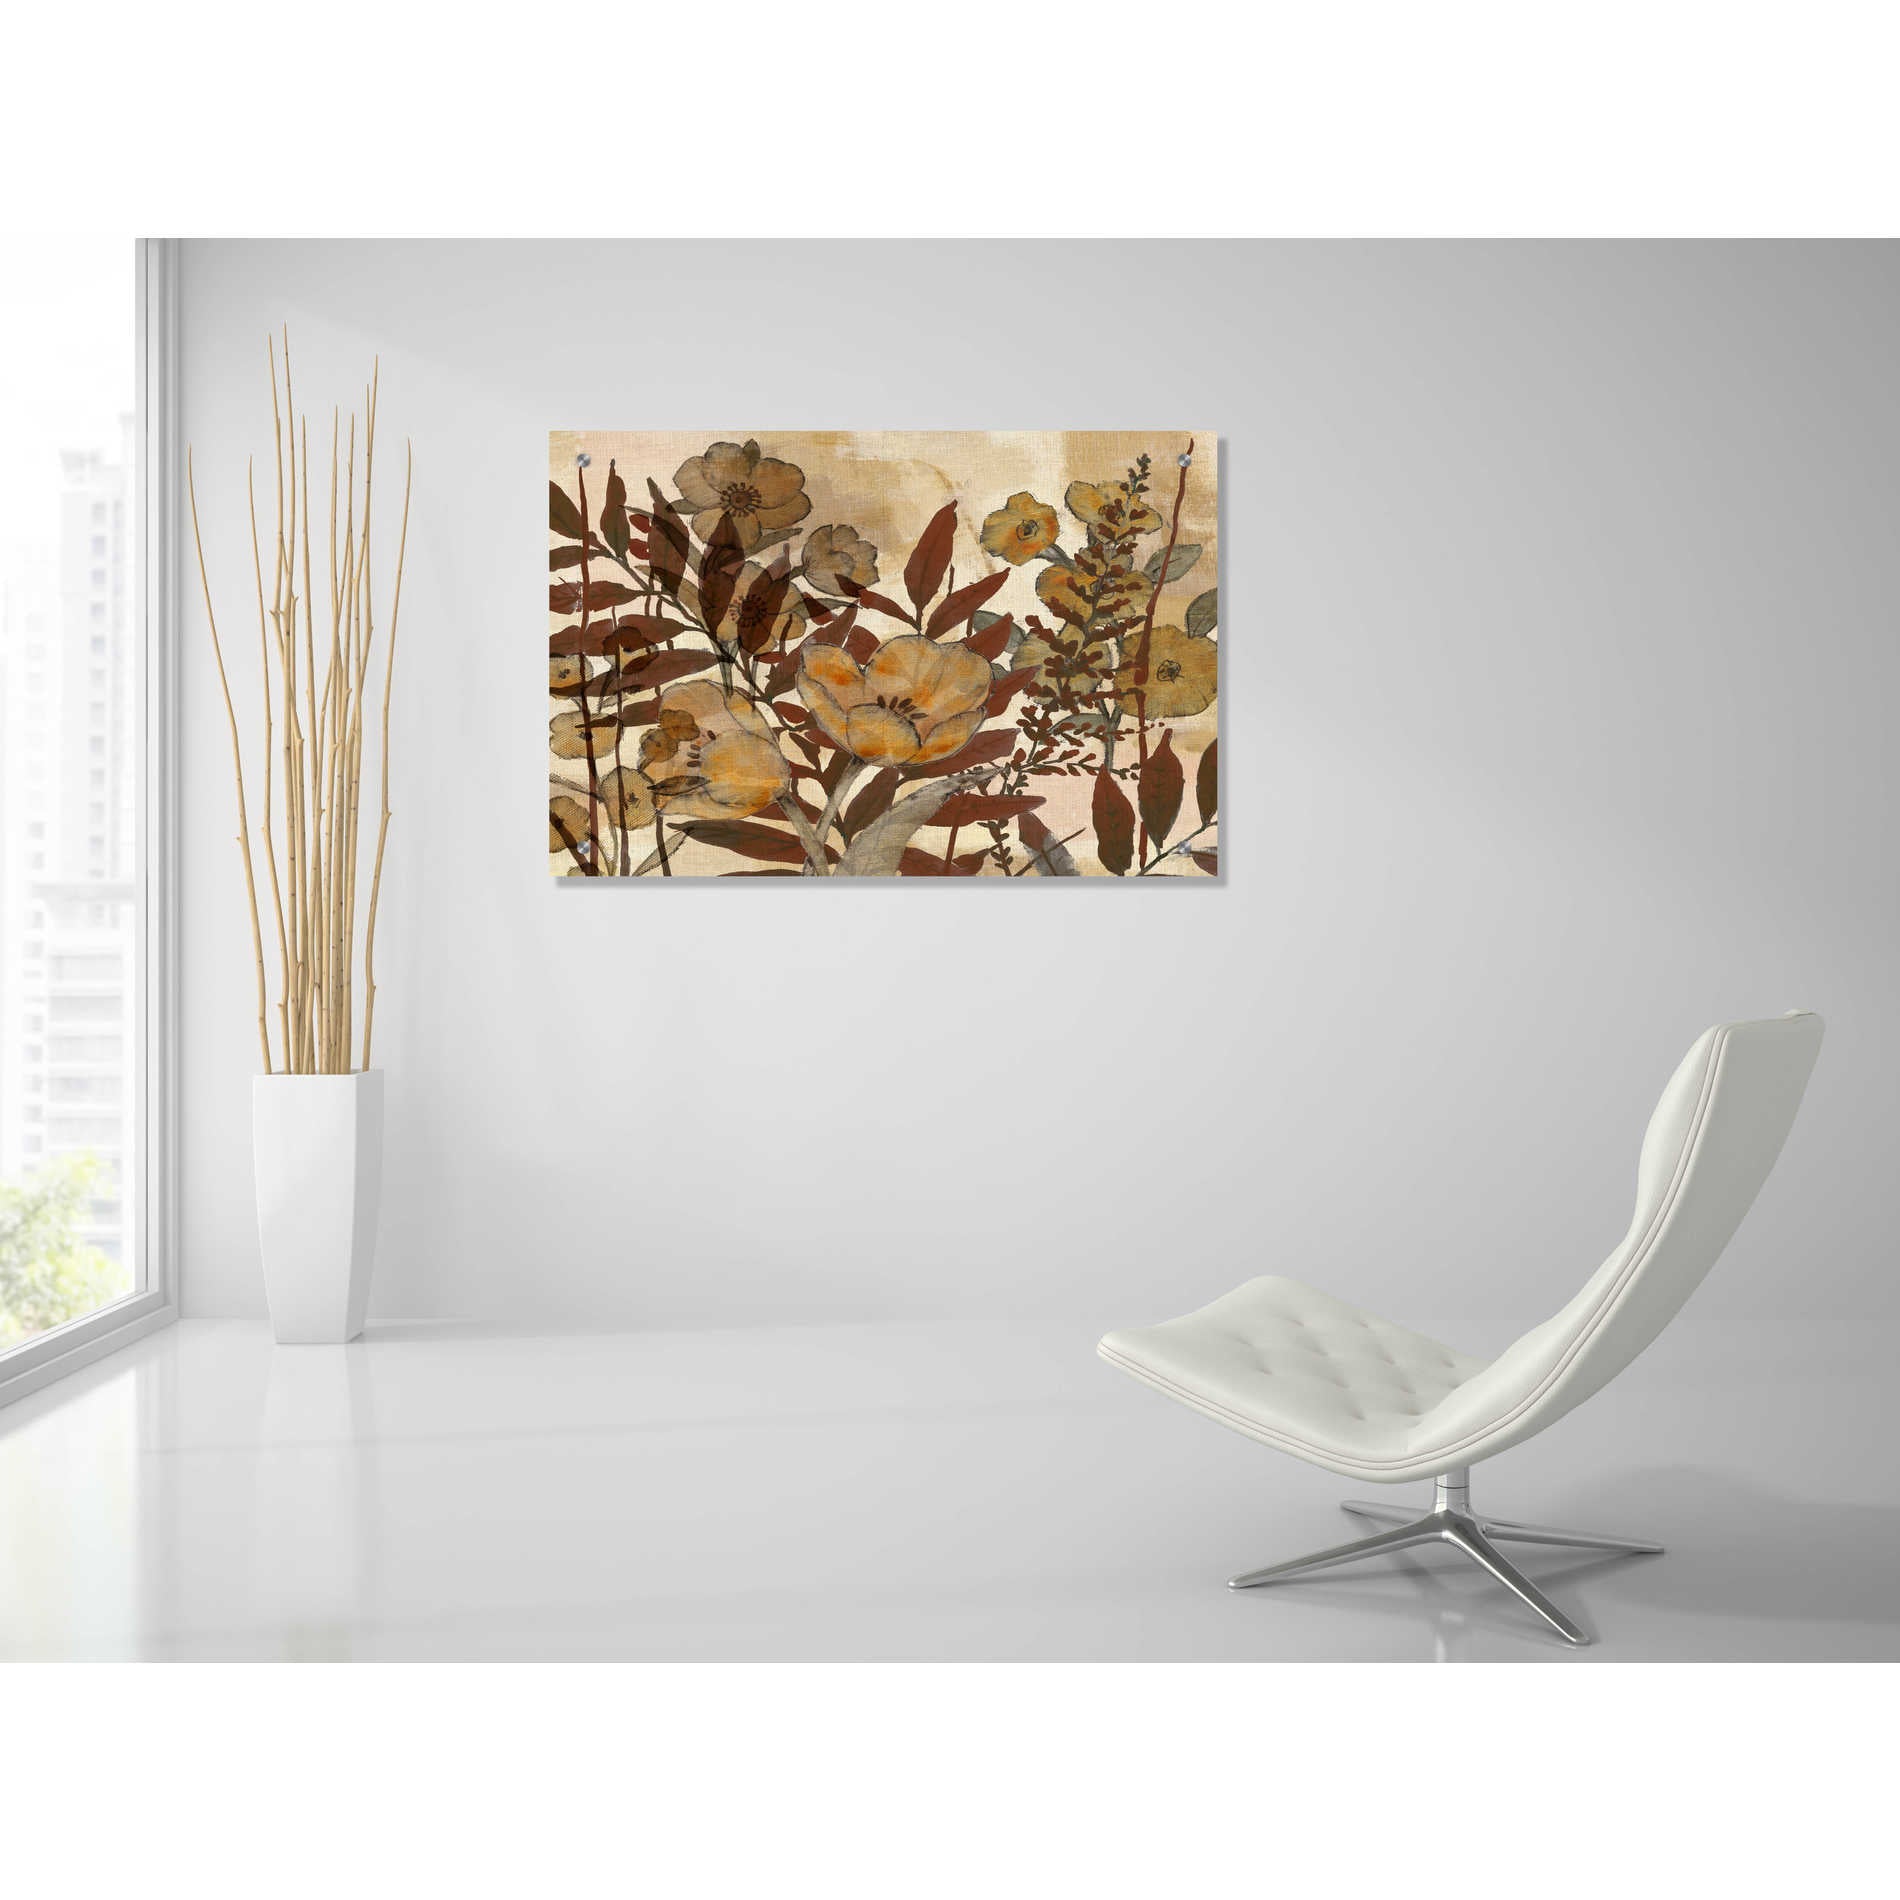 Epic Art 'Sienna Arrangement III' by Studio W, Acrylic Glass Wall Art,36x24